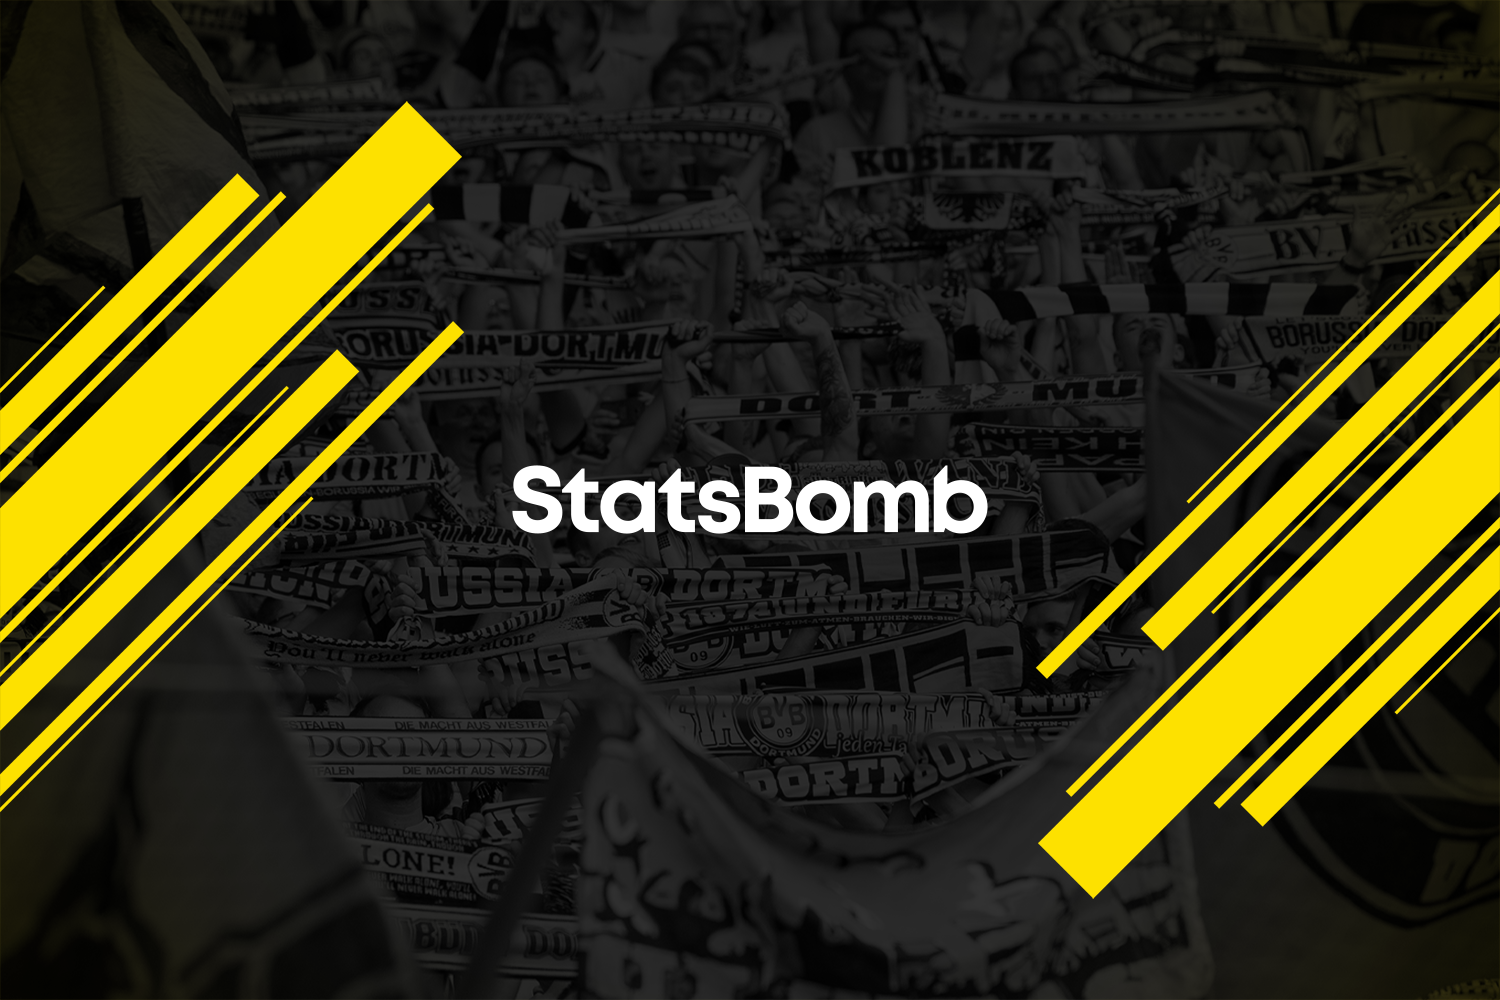 StatsBomb vereinbart Partnerschaft mit Borussia Dortmund